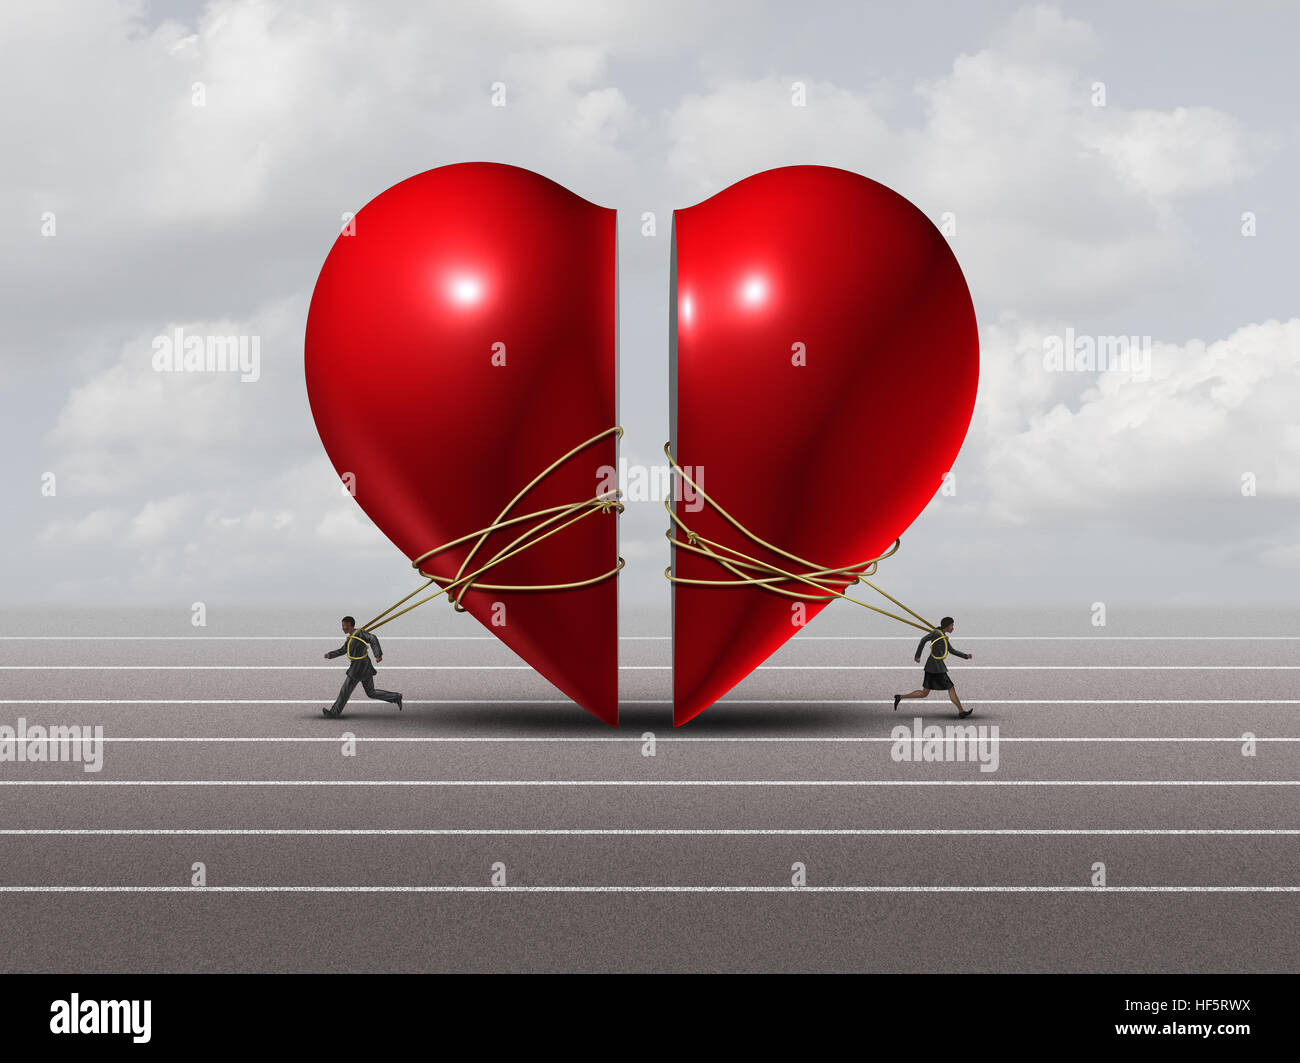 Paar in der Krise und Beziehung Problem-Konzept als Mann und Frau ein rotes Valntine Herz als eine Scheidung oder Trennung Metapher mit 3D il auseinanderziehen Stockfoto